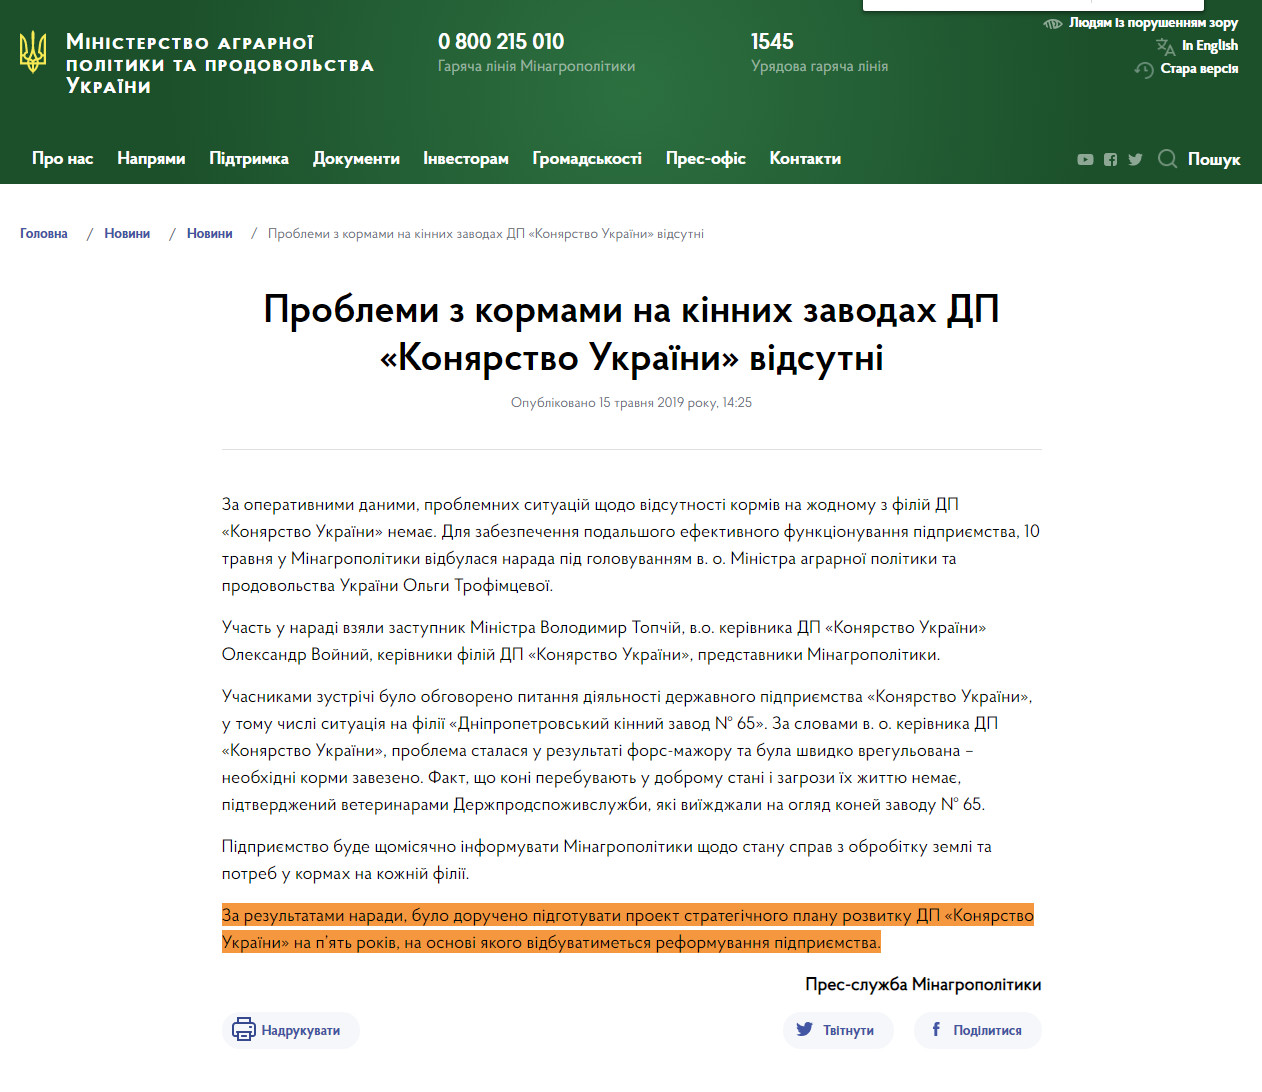 https://minagro.gov.ua/ua/news/problemi-z-kormami-na-kinnih-zavodah-dp-konyarstvo-ukrayini-vidsutni